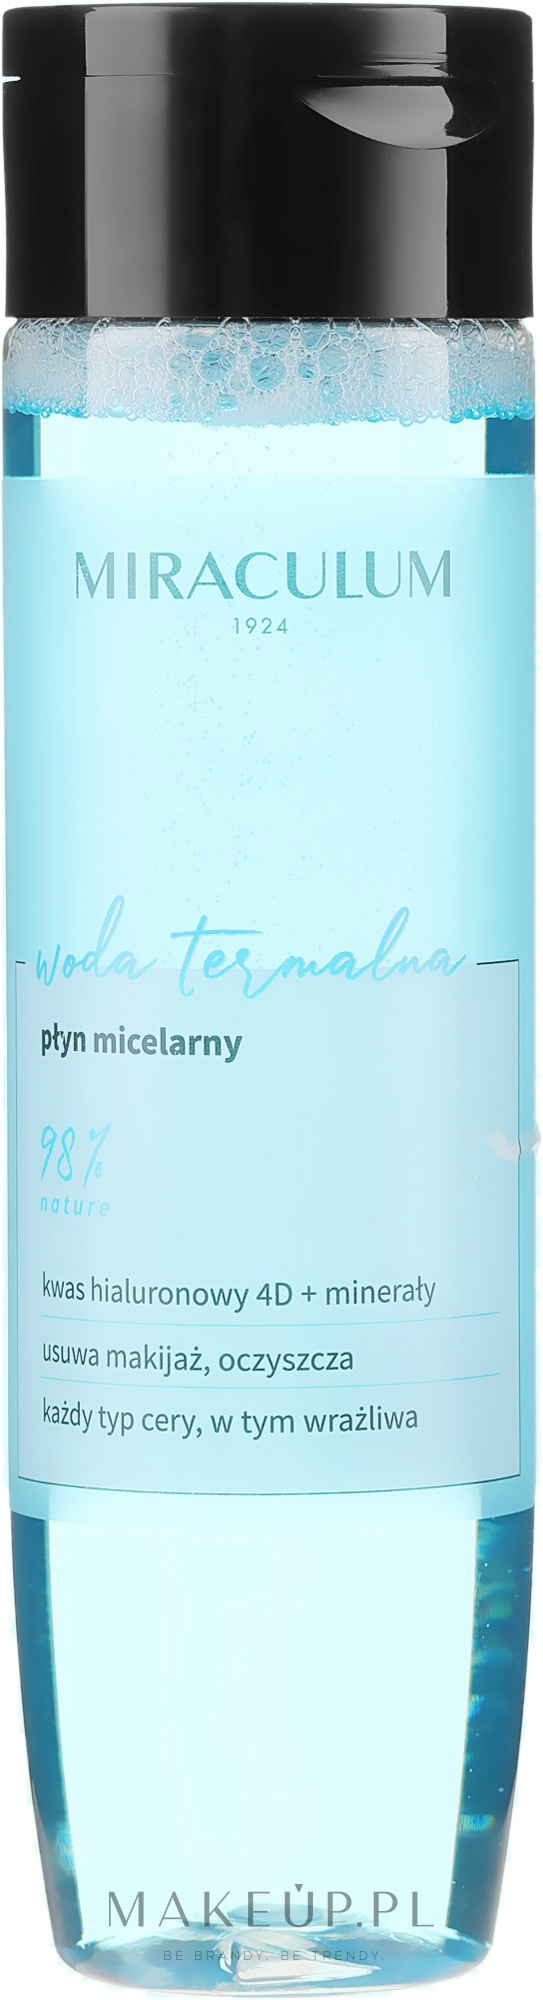 Płyn micelarny, Woda termalna - Miraculum Woda Termalna  — Zdjęcie 200 ml